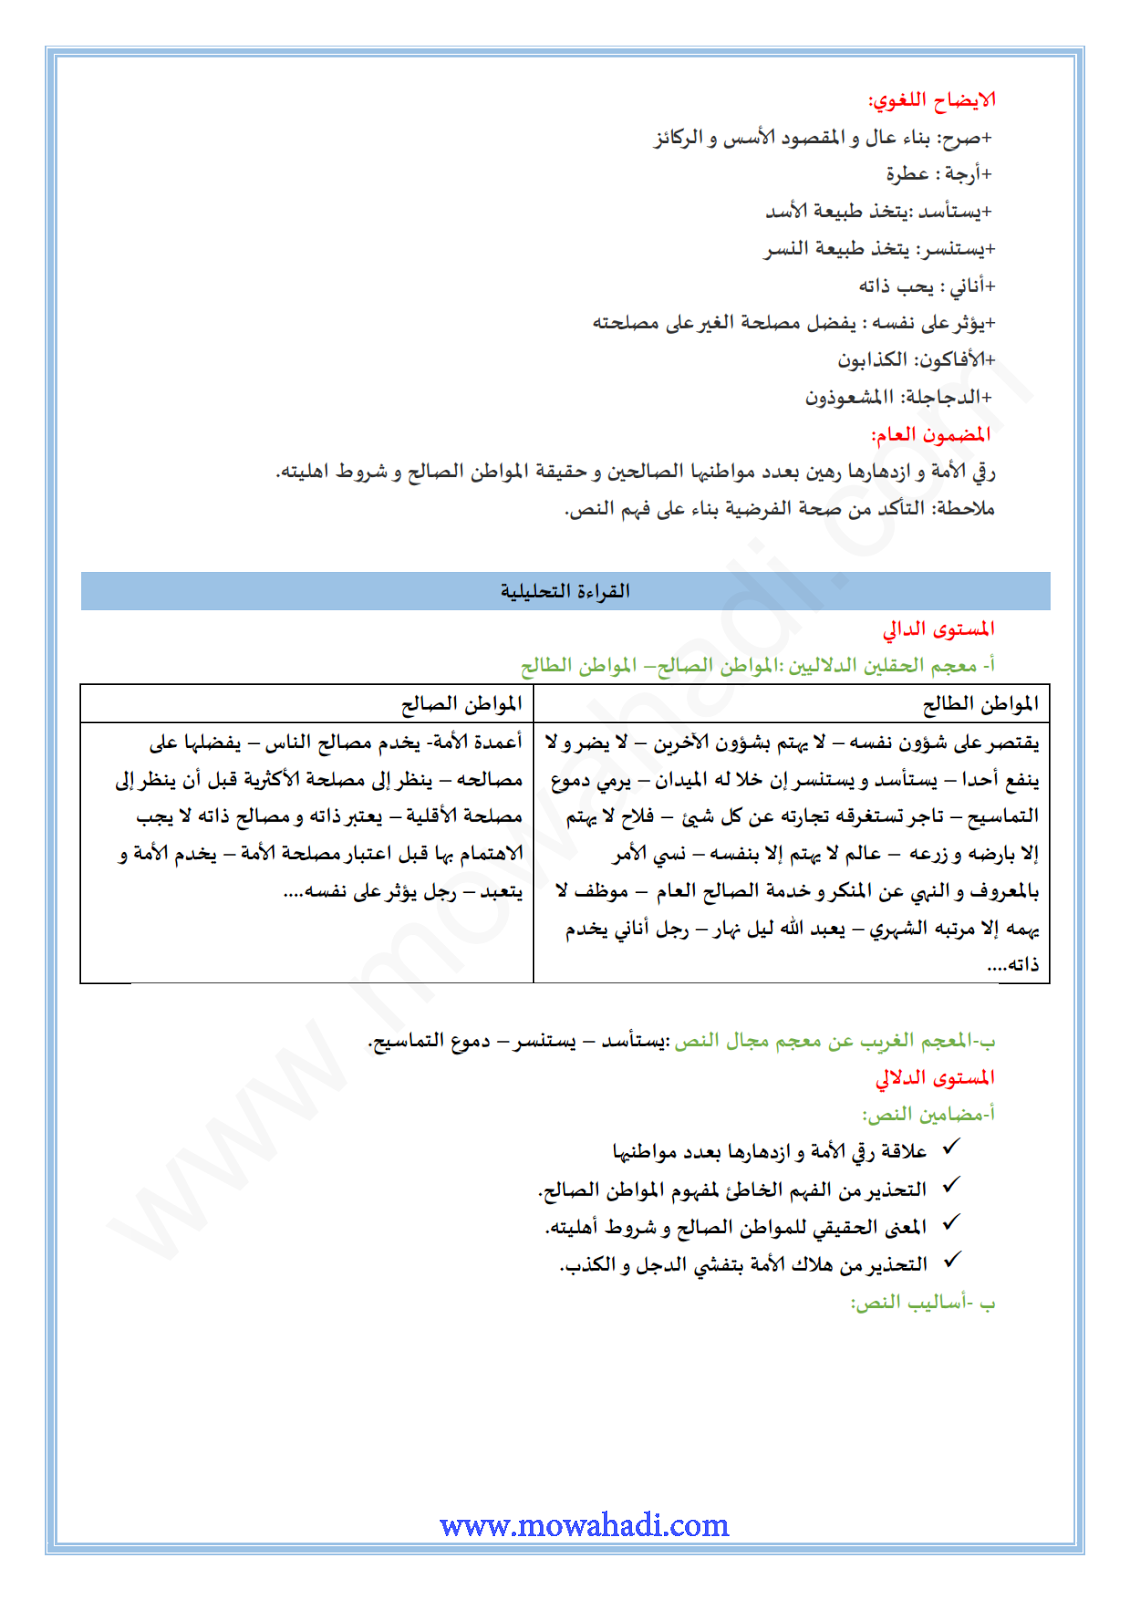 تحضير النص القرائي المواطن الصالح للسنة الثانية عدادي في مادة اللغة العربية 6-cours-morchidi2_002